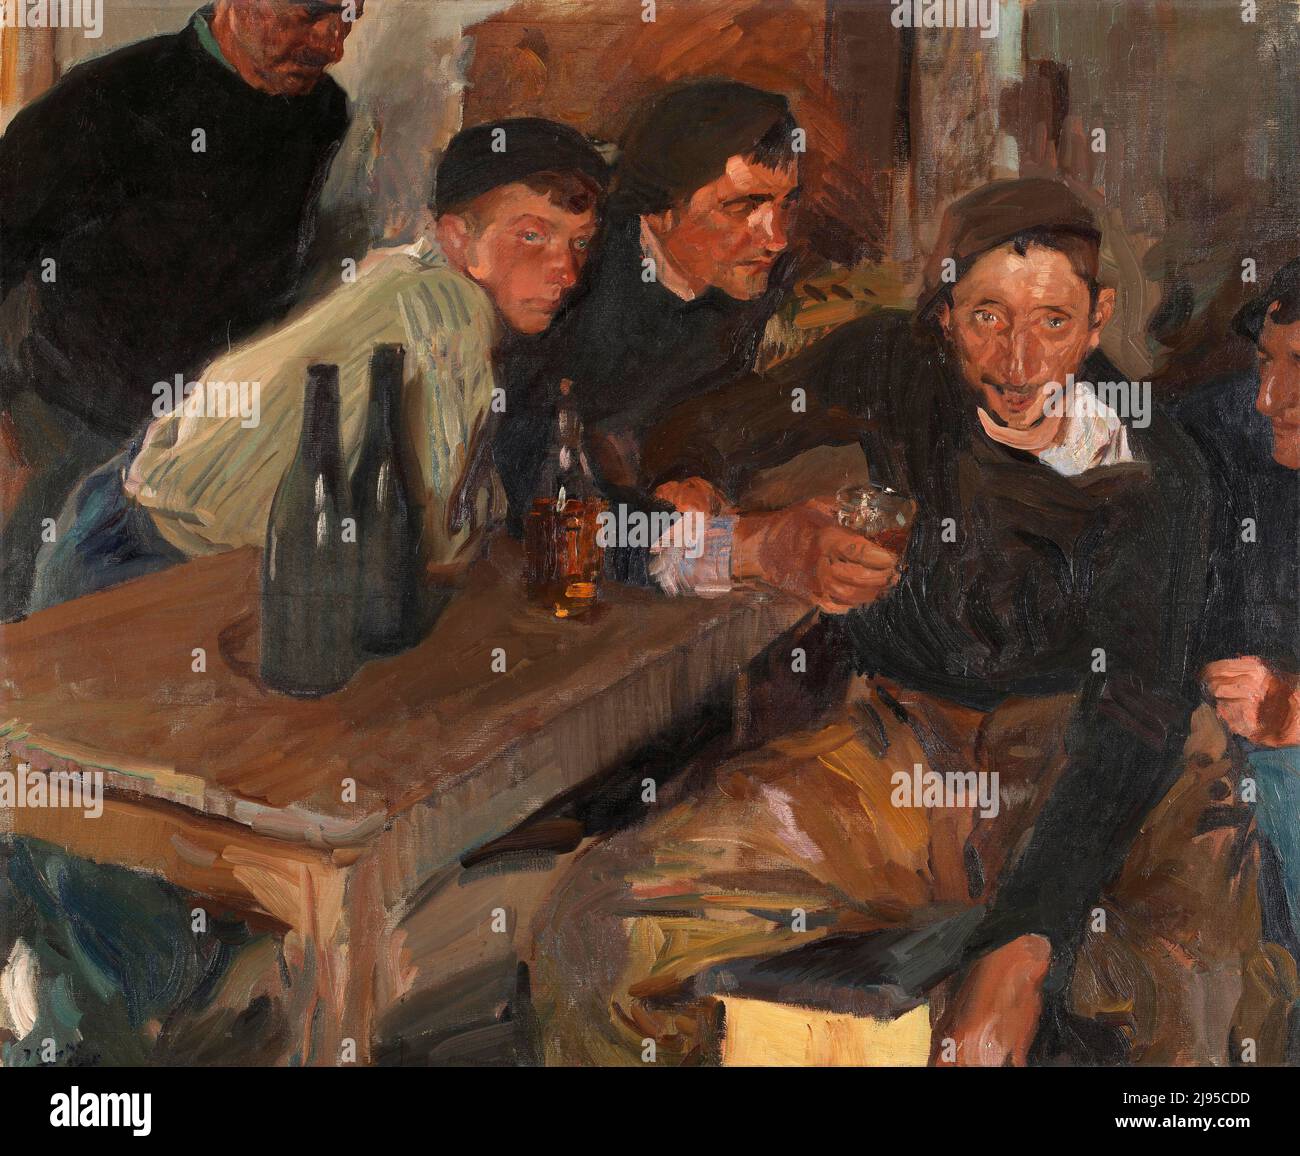 Le Drunkard, Zarauz (El Borracho, Zarauz) par l'artiste espagnol Joaquín Sorolla (1863-1923), huile sur toile, 1910 Banque D'Images